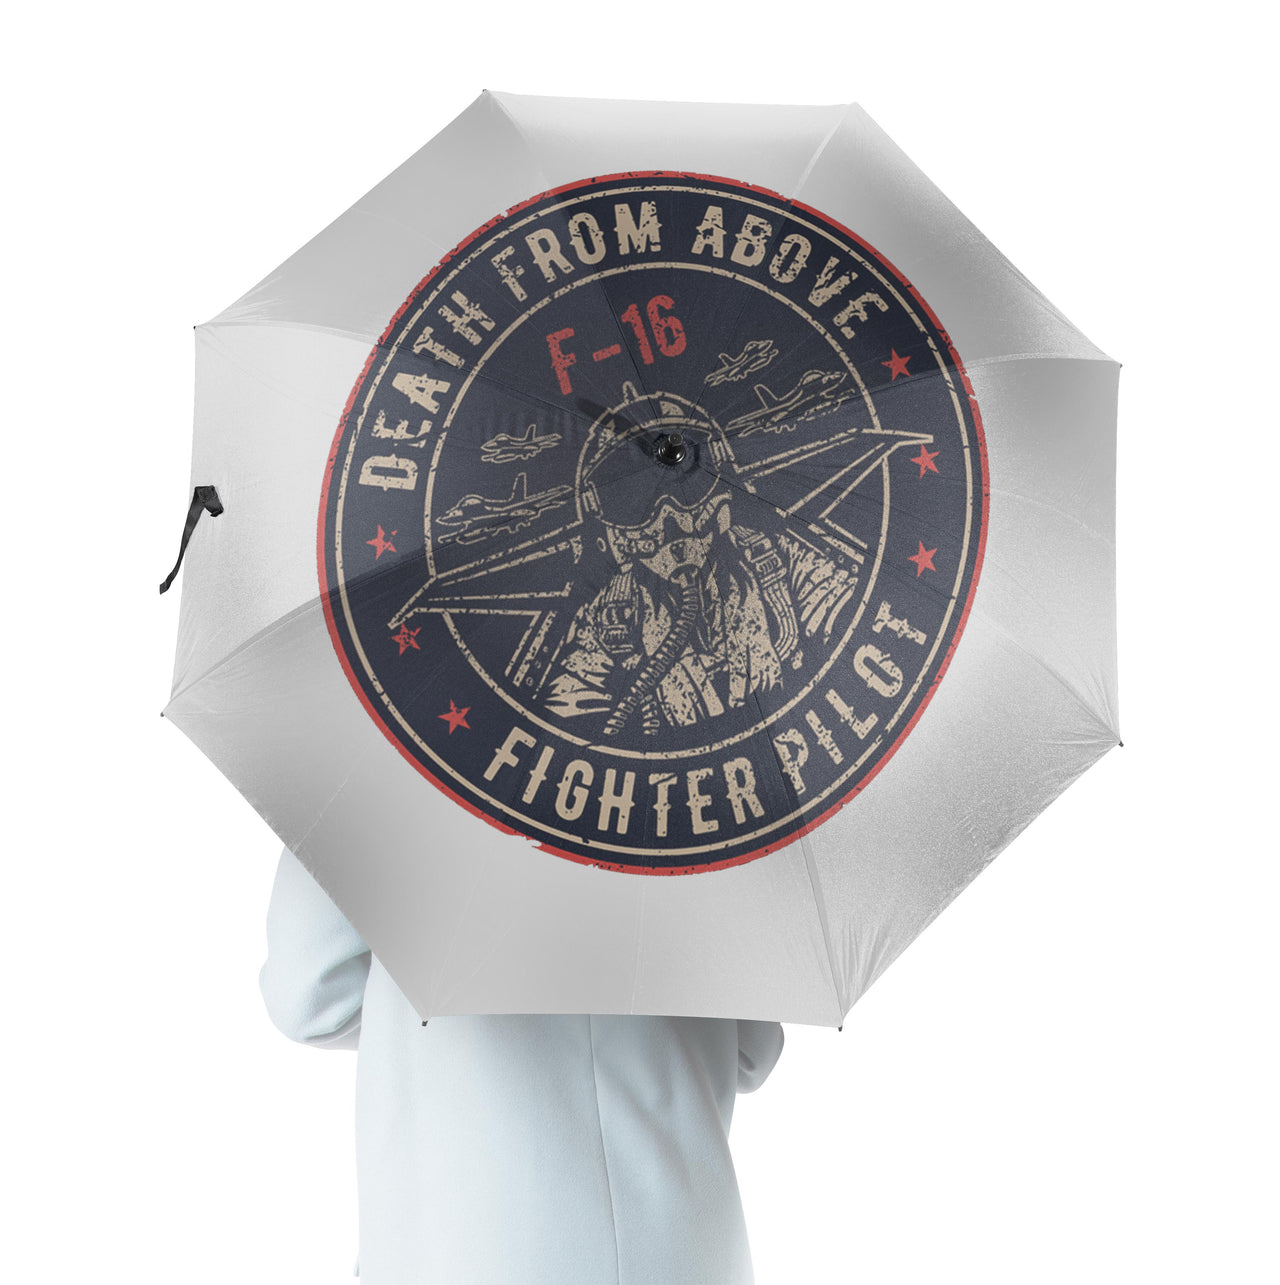 Fighting Falcon F16 - Death From Above Designed Umbrella